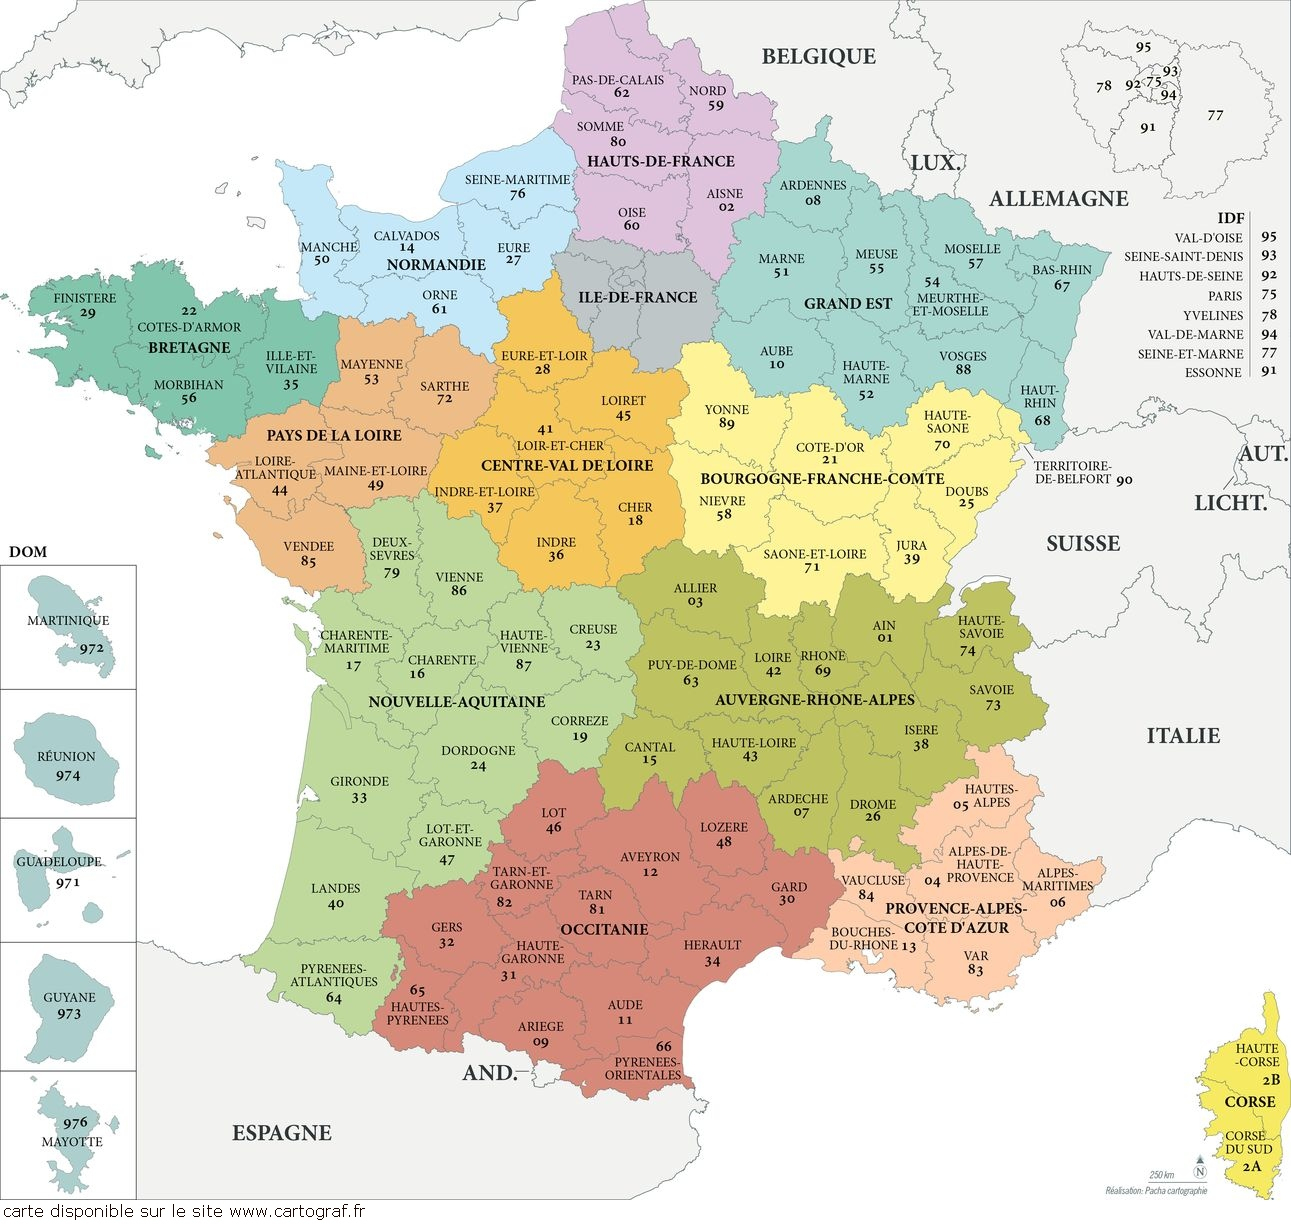 Cartograf.fr : Carte De La France : Page 2 destiné Carte De France Dom Tom 